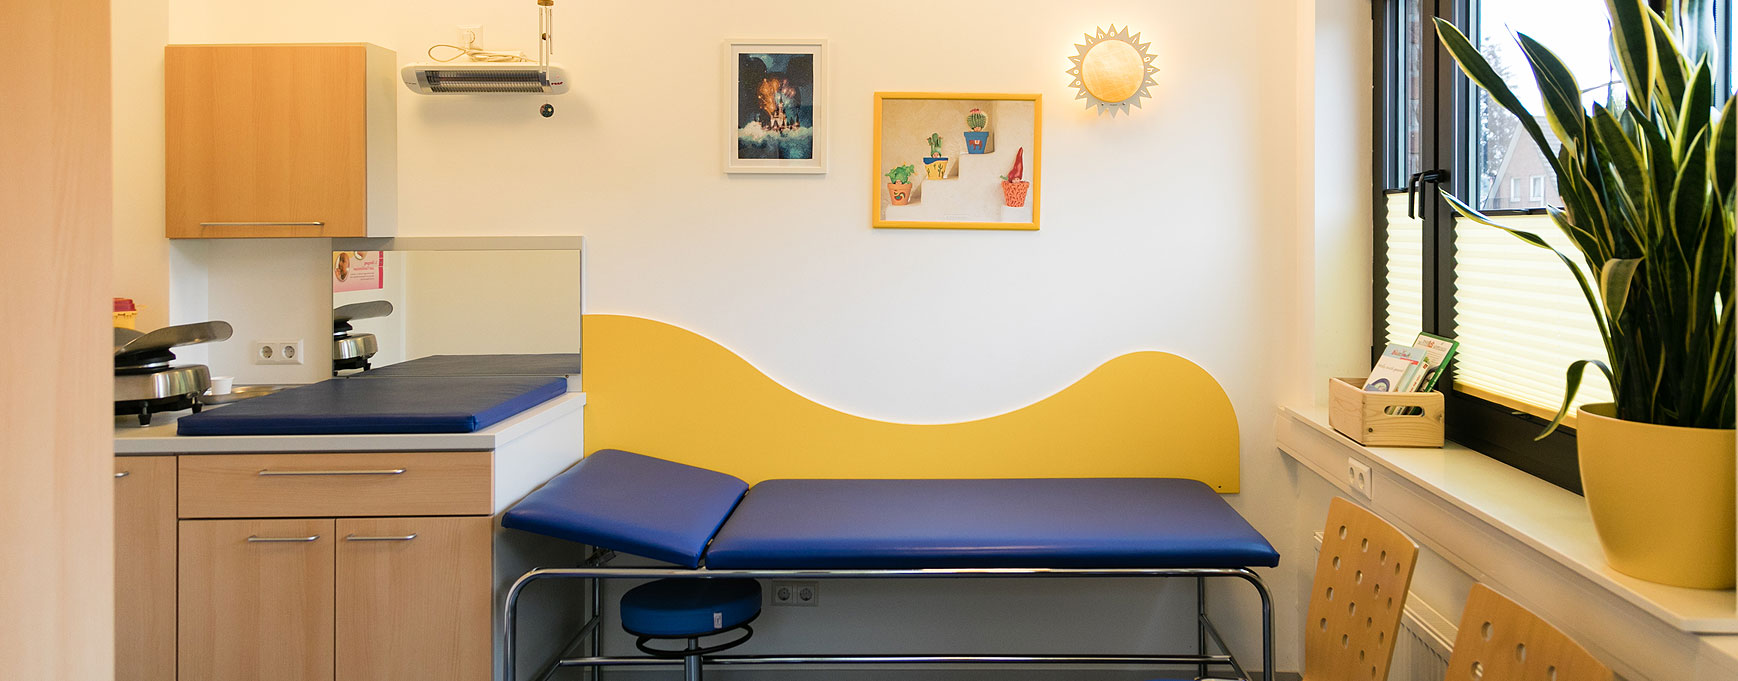 Hier siehr man ein Behandlungszimmer mit einer dunkelblauen Liege und einer gelben Holzwelle im Hintergund an der Wand.